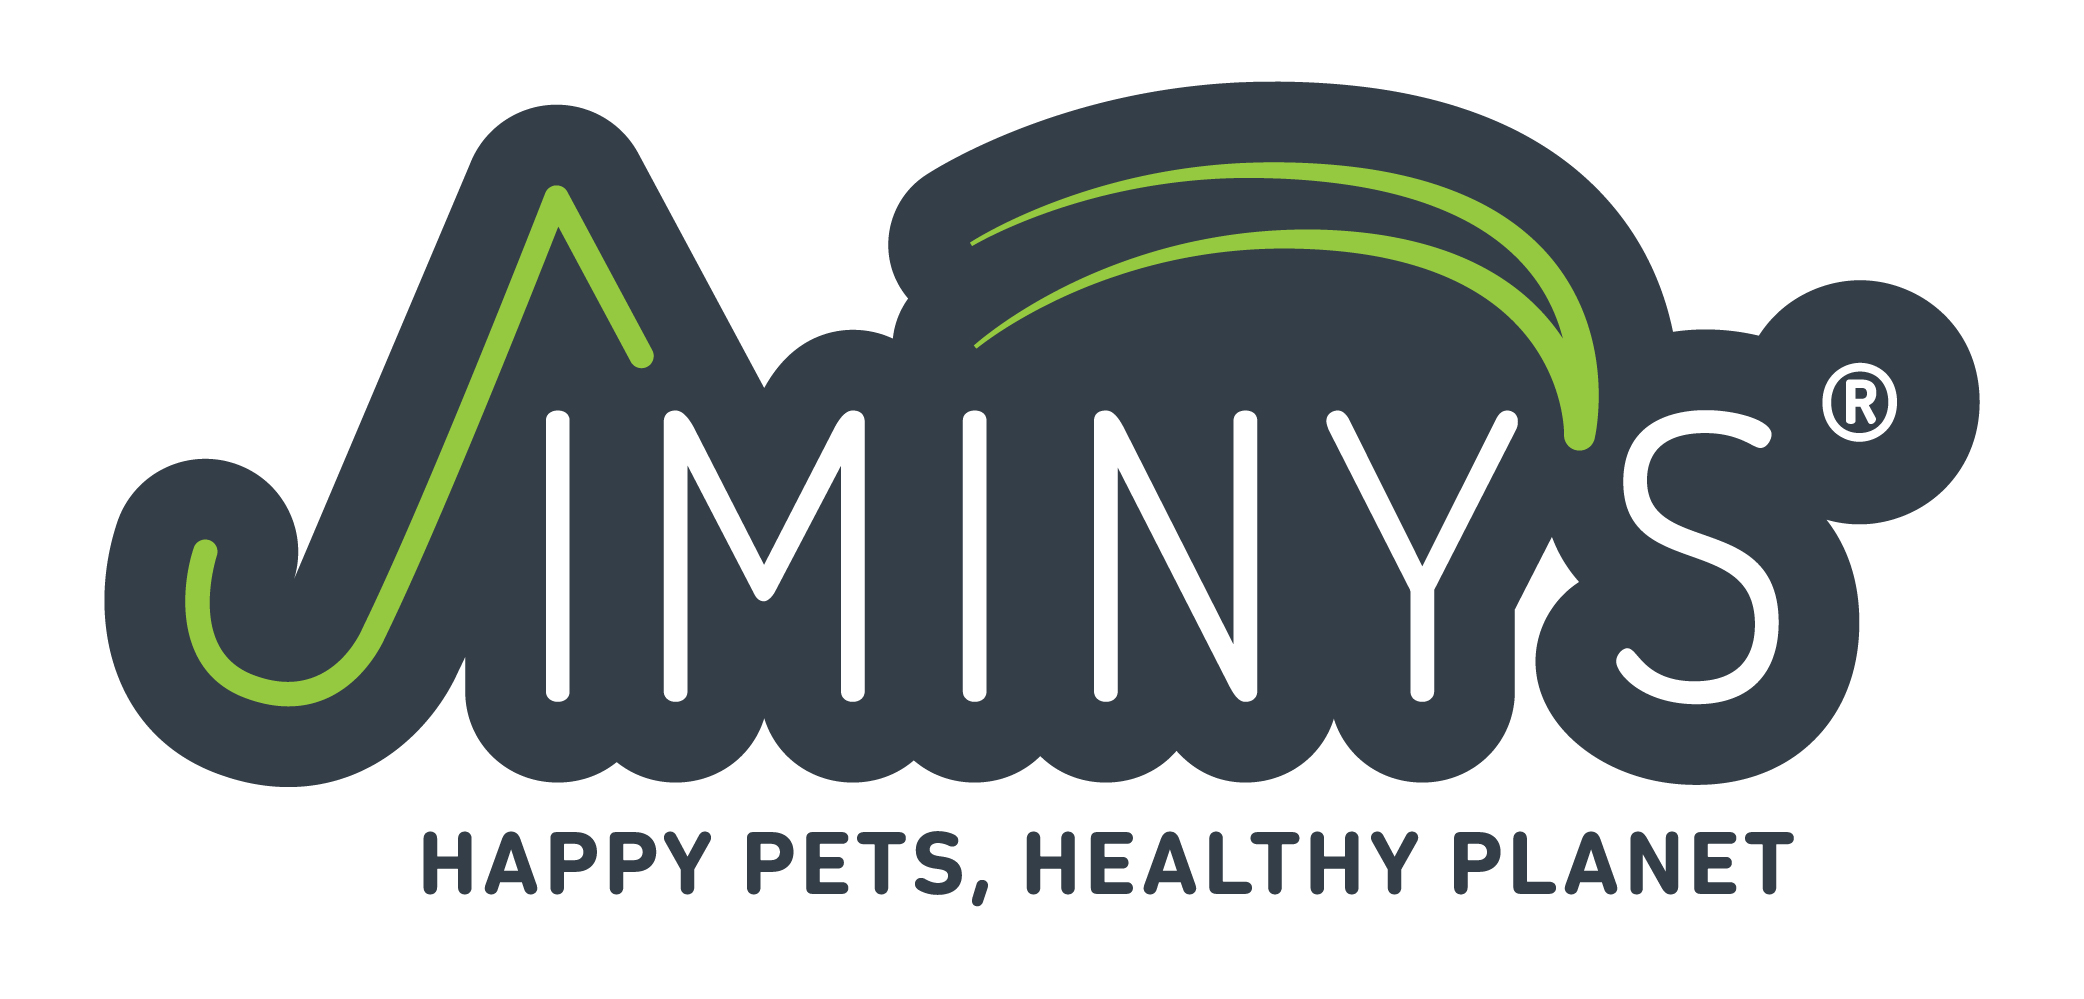 Jiminy's Logo Image